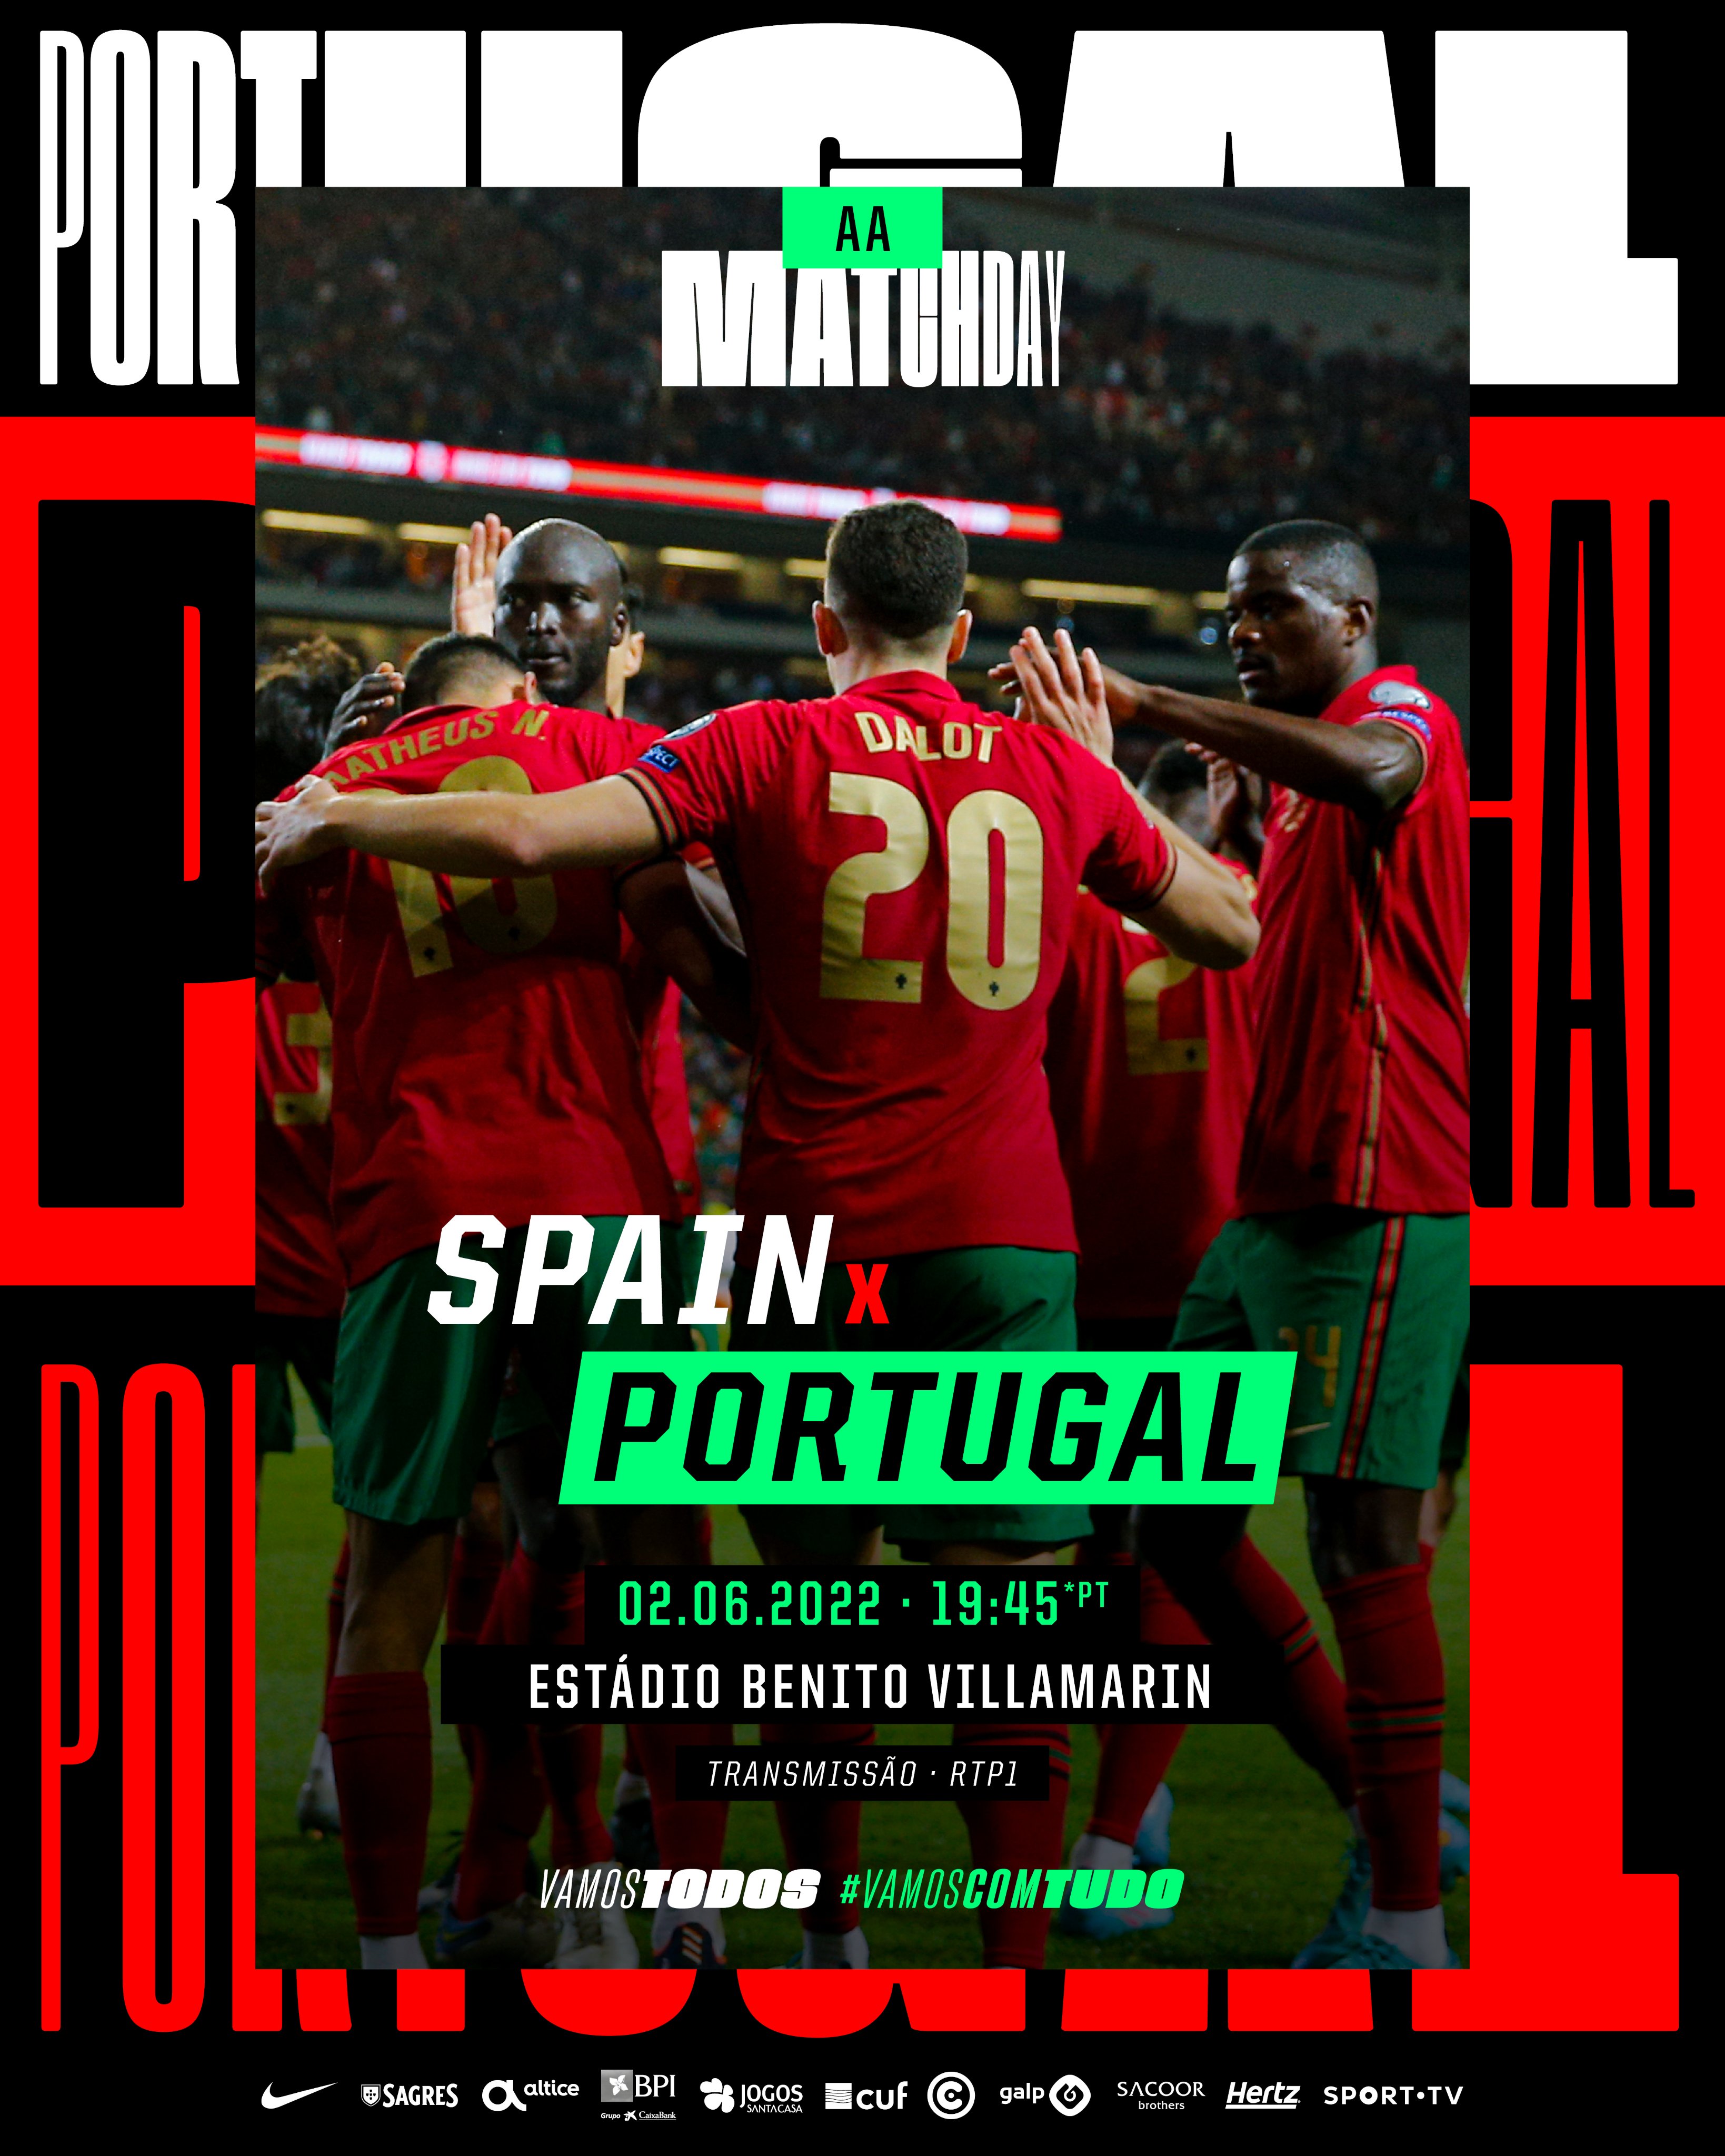 Portekiz'in İspanya maçı öncesi hazırladığı görsel